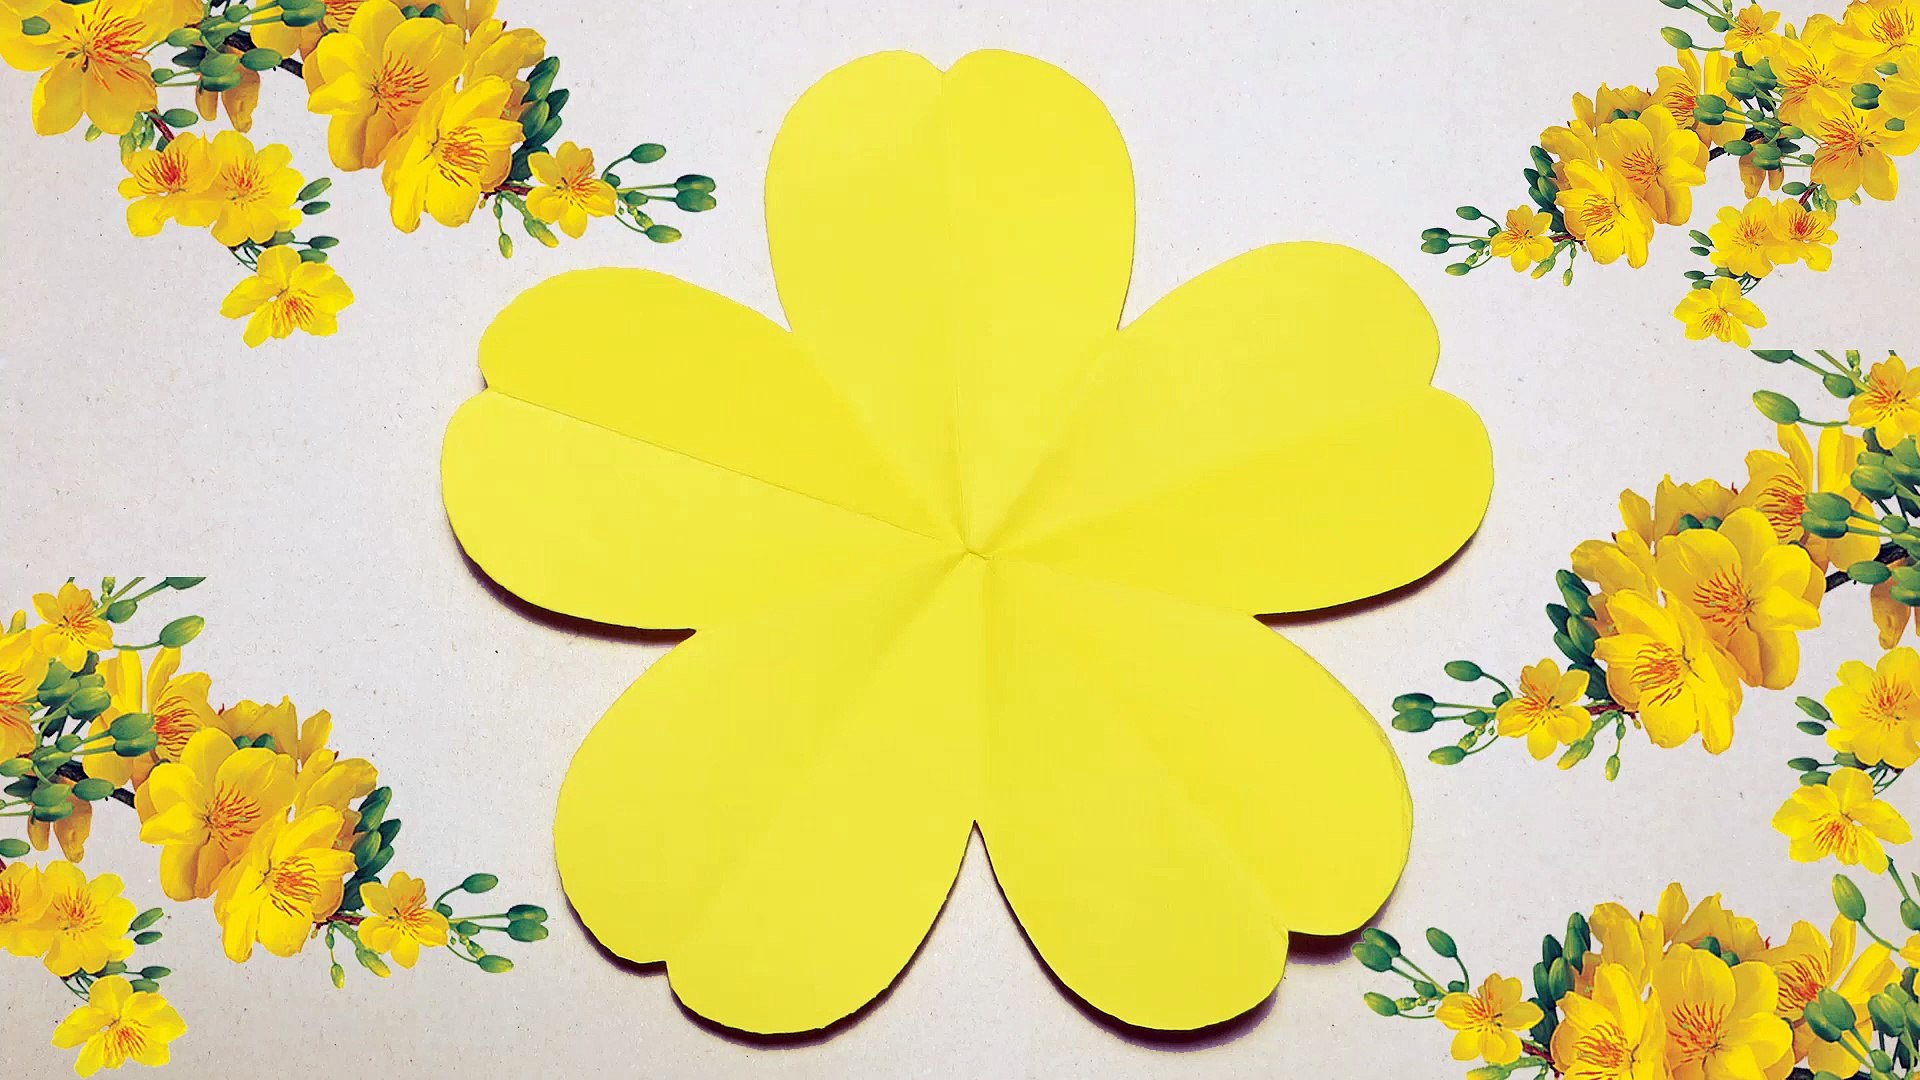 Những chiếc hoa mai folding 5-petal yellow flower được cắm trong một bình hoa sẽ làm bạn bay bổng vì sự độc đáo và đẹp mắt. Bạn sẽ khám phá được những cung bậc cảm xúc mới lạ đến từ sự hoa mỹ của chúng. Hình ảnh này chắc chắn sẽ làm bạn háo hức và ham muốn tìm hiểu thêm.